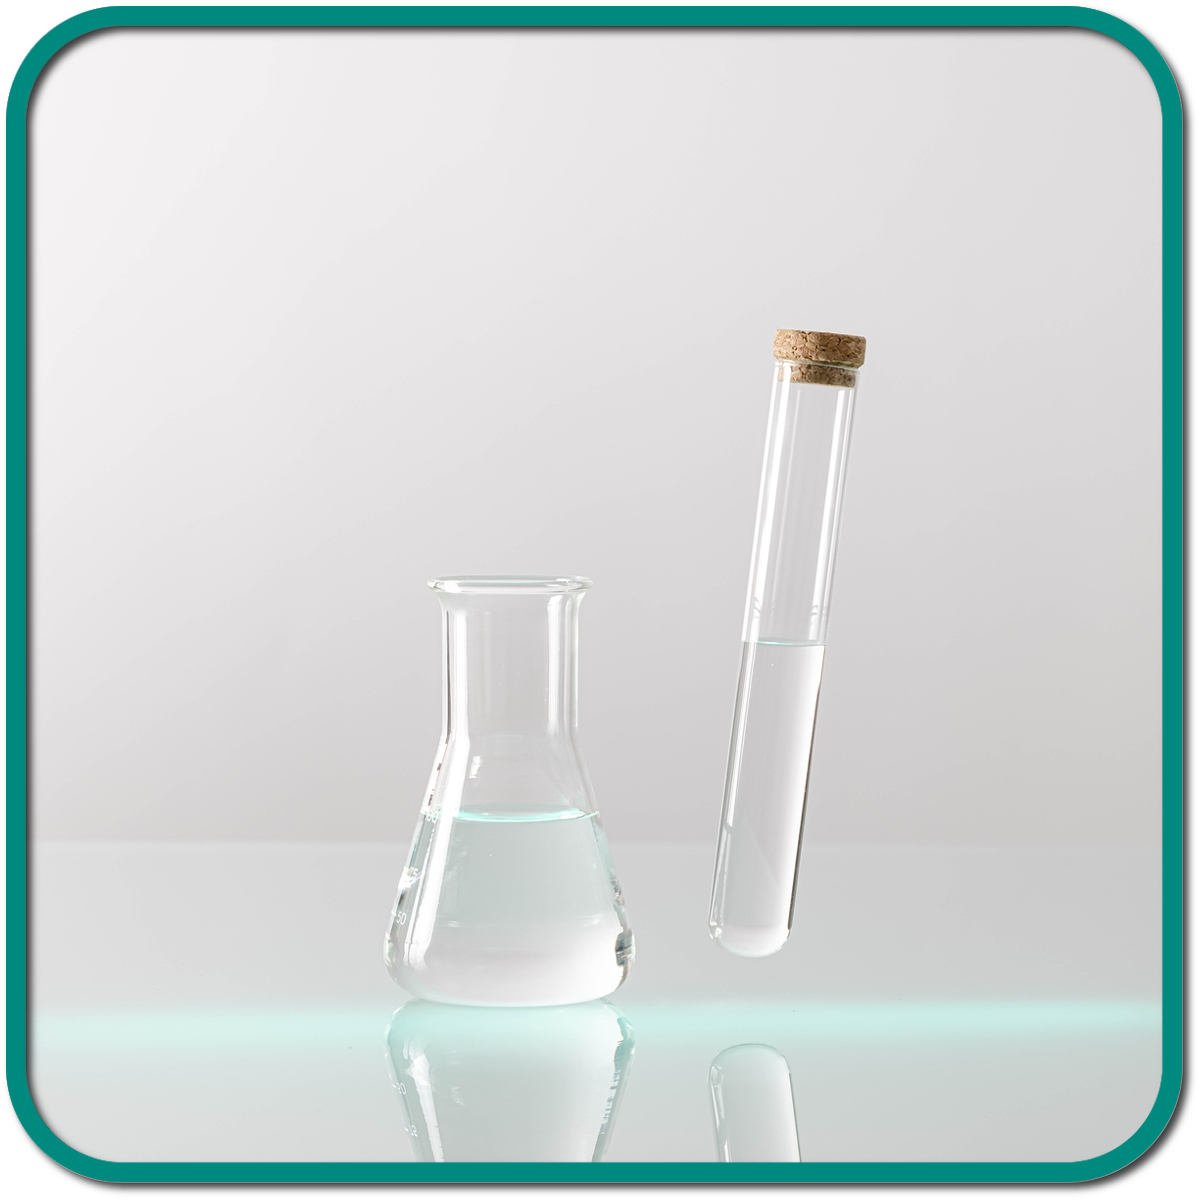 DEUREX water based emulsions